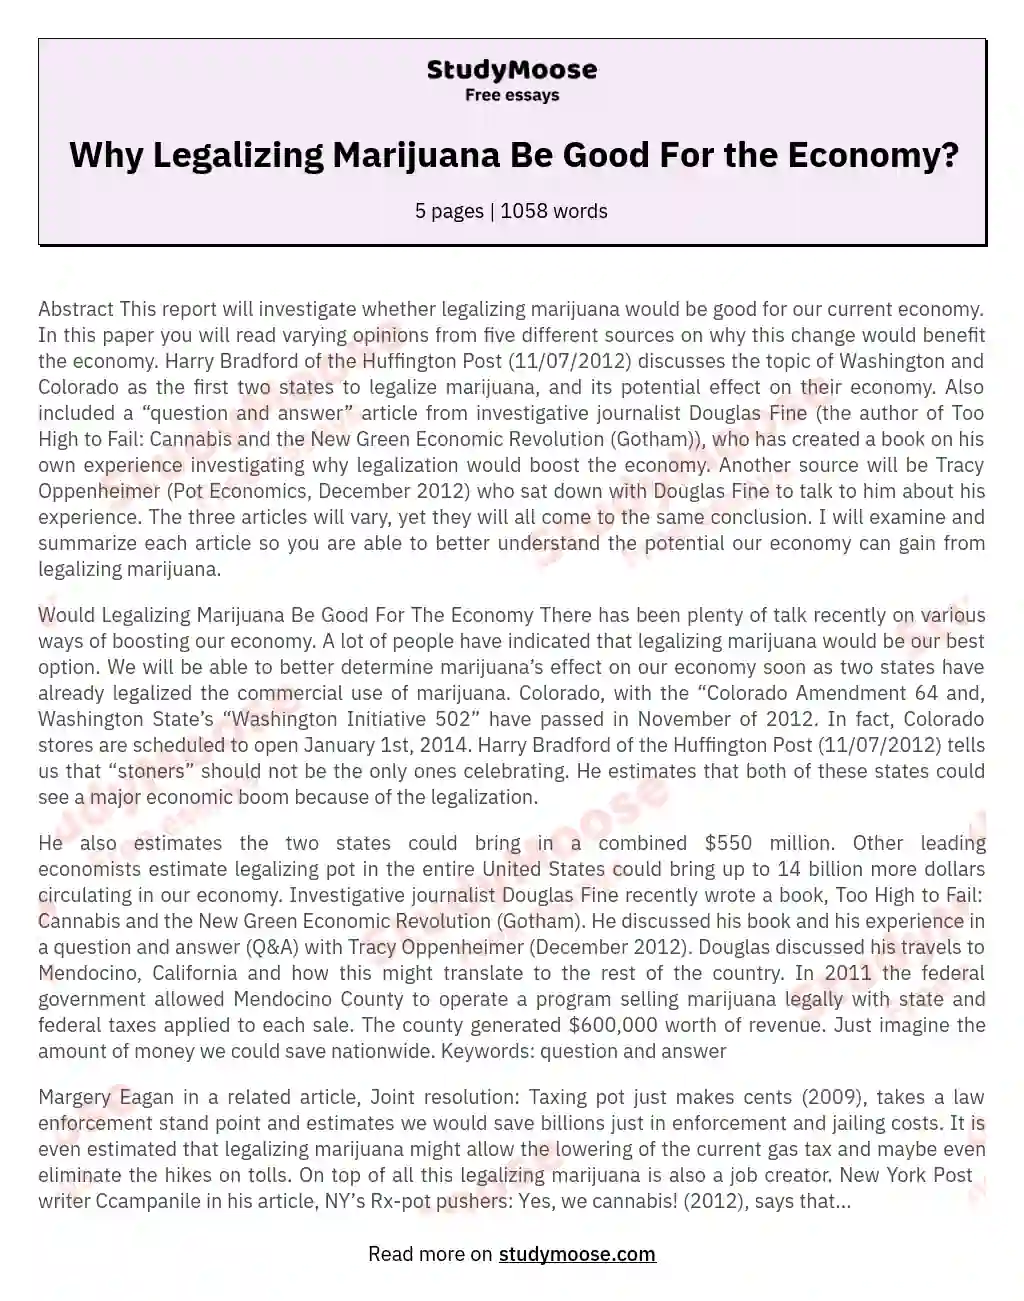 Why Legalizing Marijuana Be Good For the Economy?